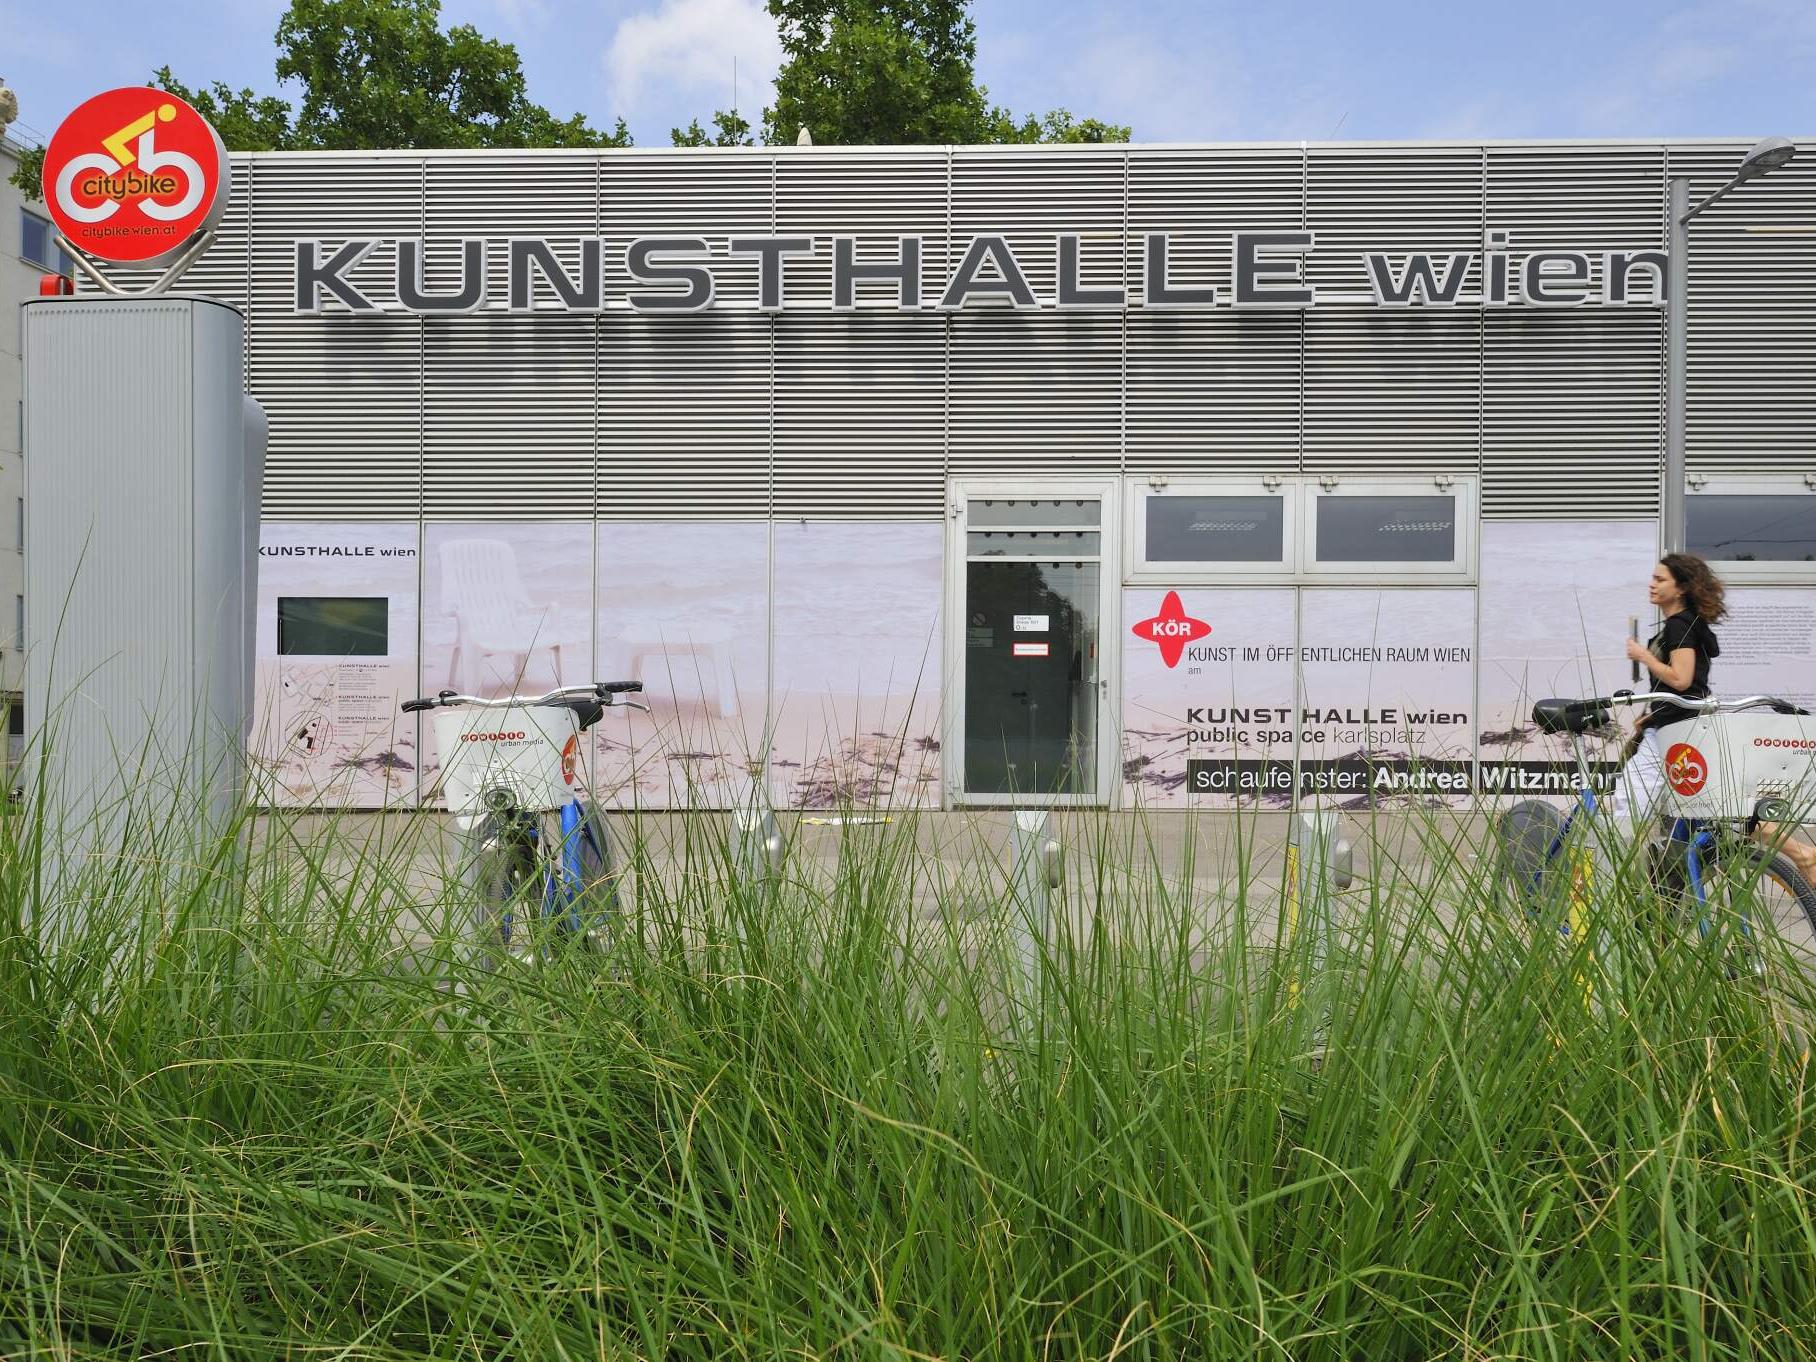 Kunsthalle Wien, project space karlsplatz (4., Treitlstraße 2,)